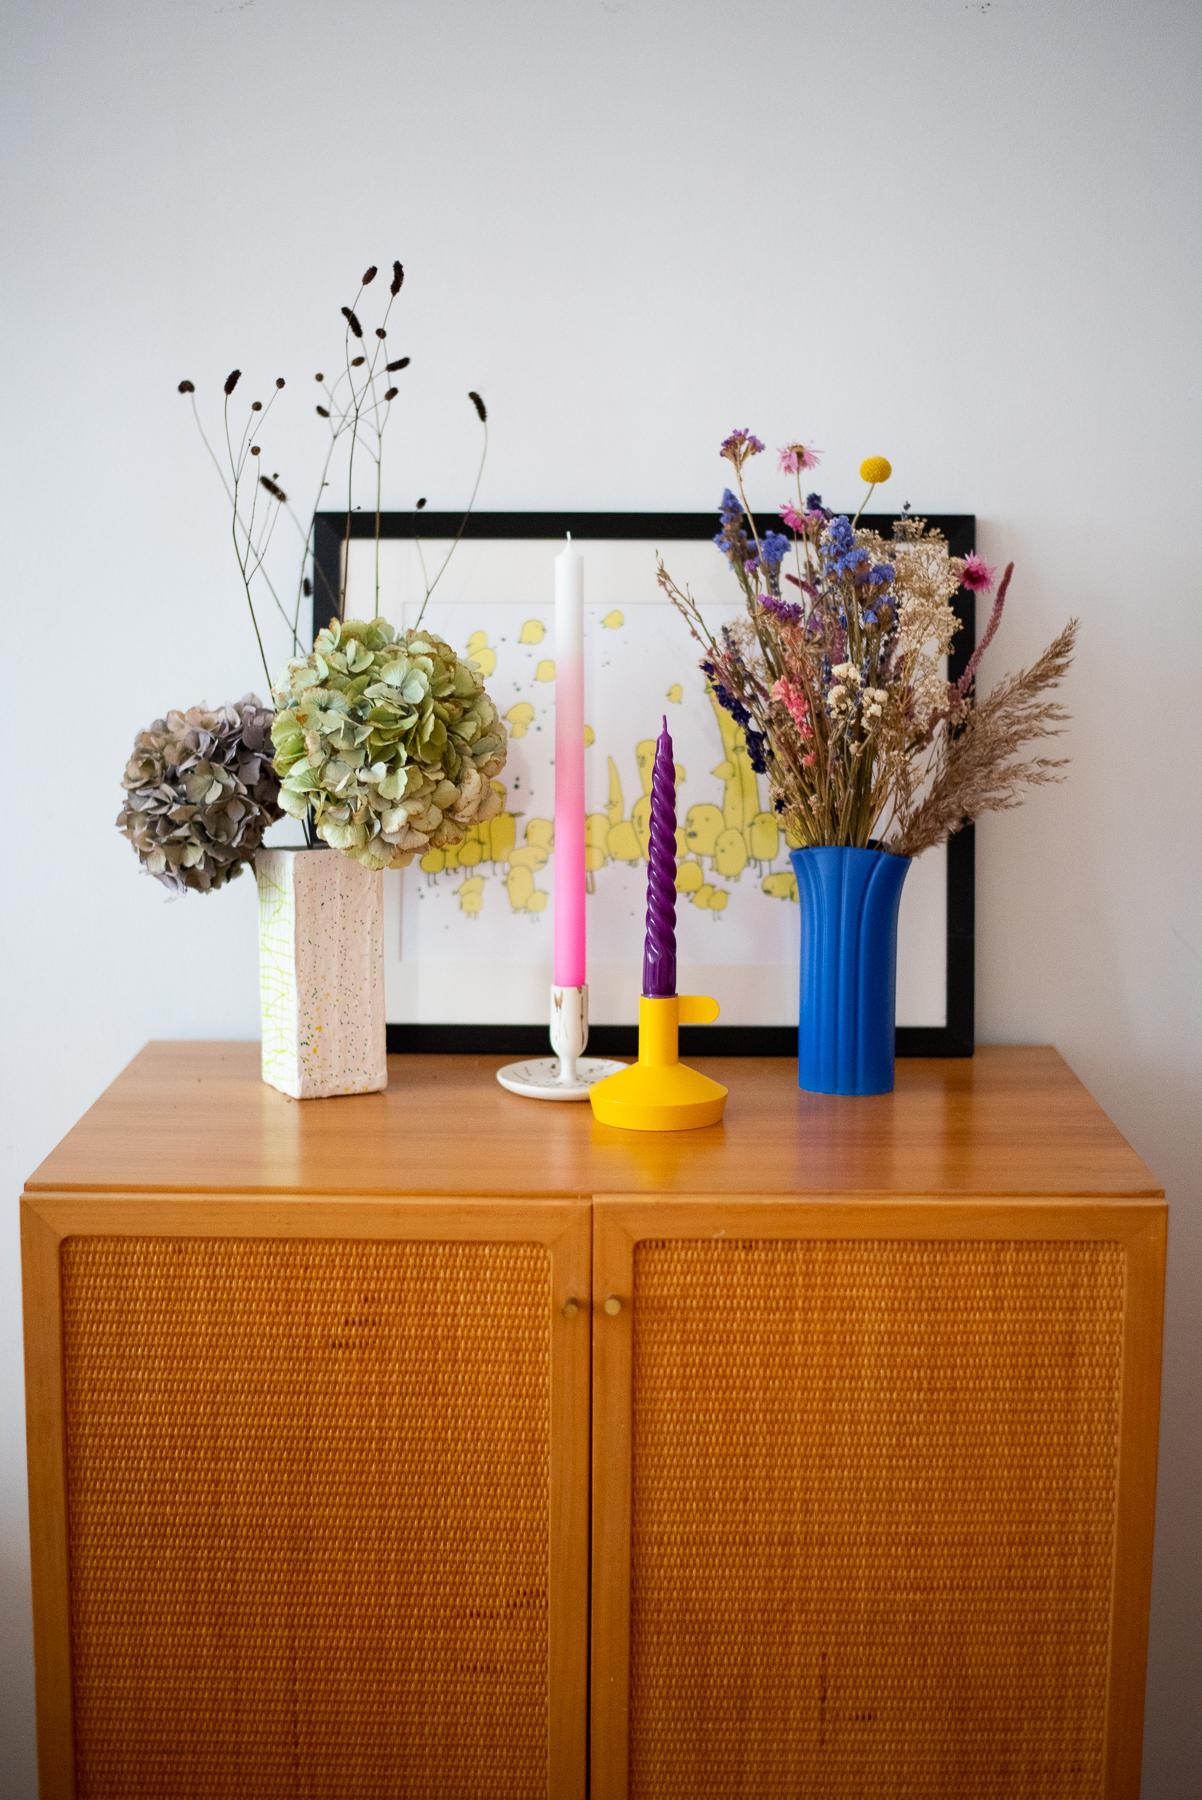 Einen farbenfrohen Wochenstart! #deko #vasen #trockenblumen #Decoinspo #colourful #interior #wohnzimmer #vintagekommode